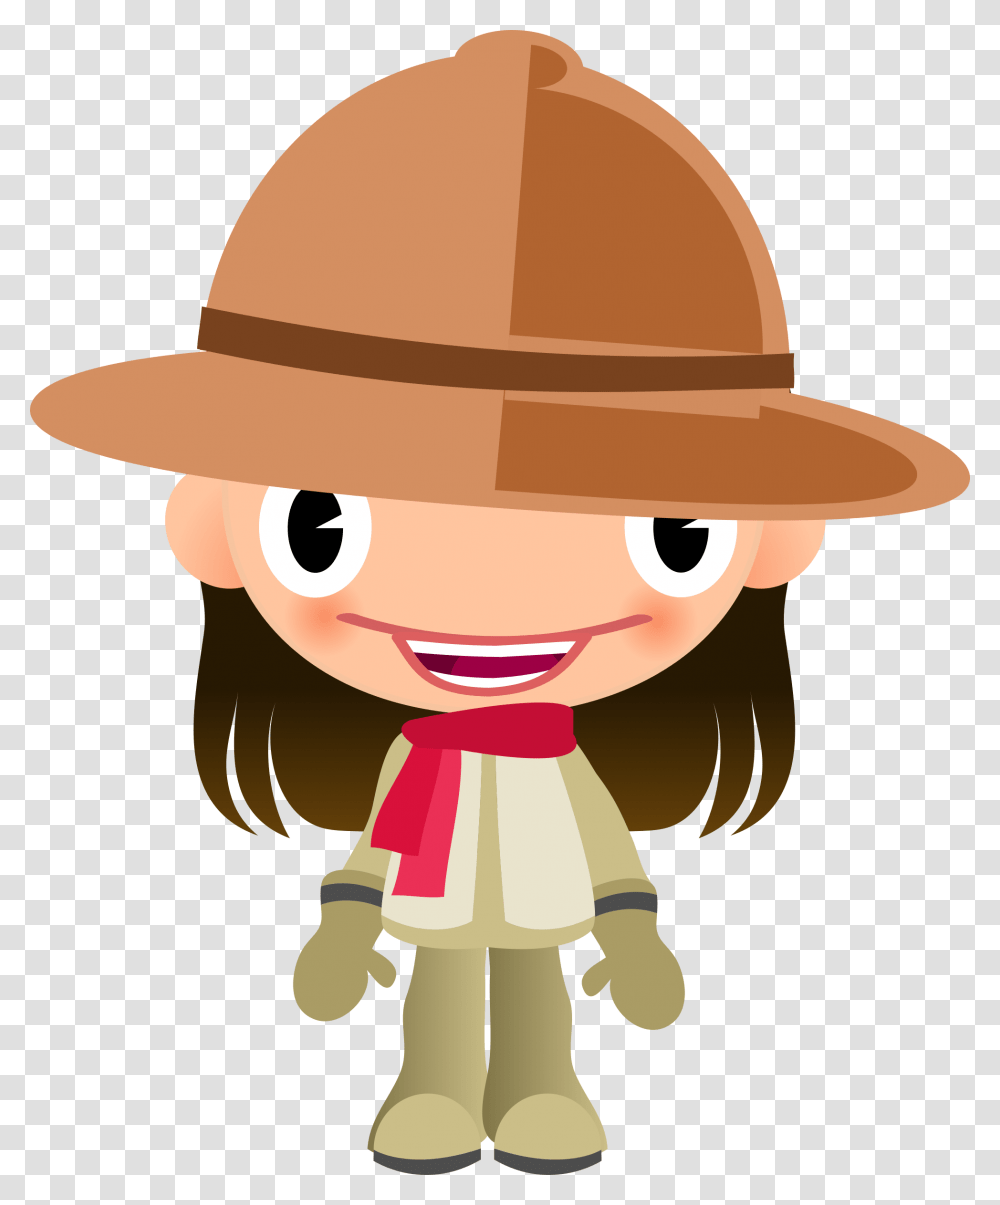 Desenhos Coloridos De Safari Girl With A Hat Clipart, Apparel, Sun Hat, Label Transparent Png